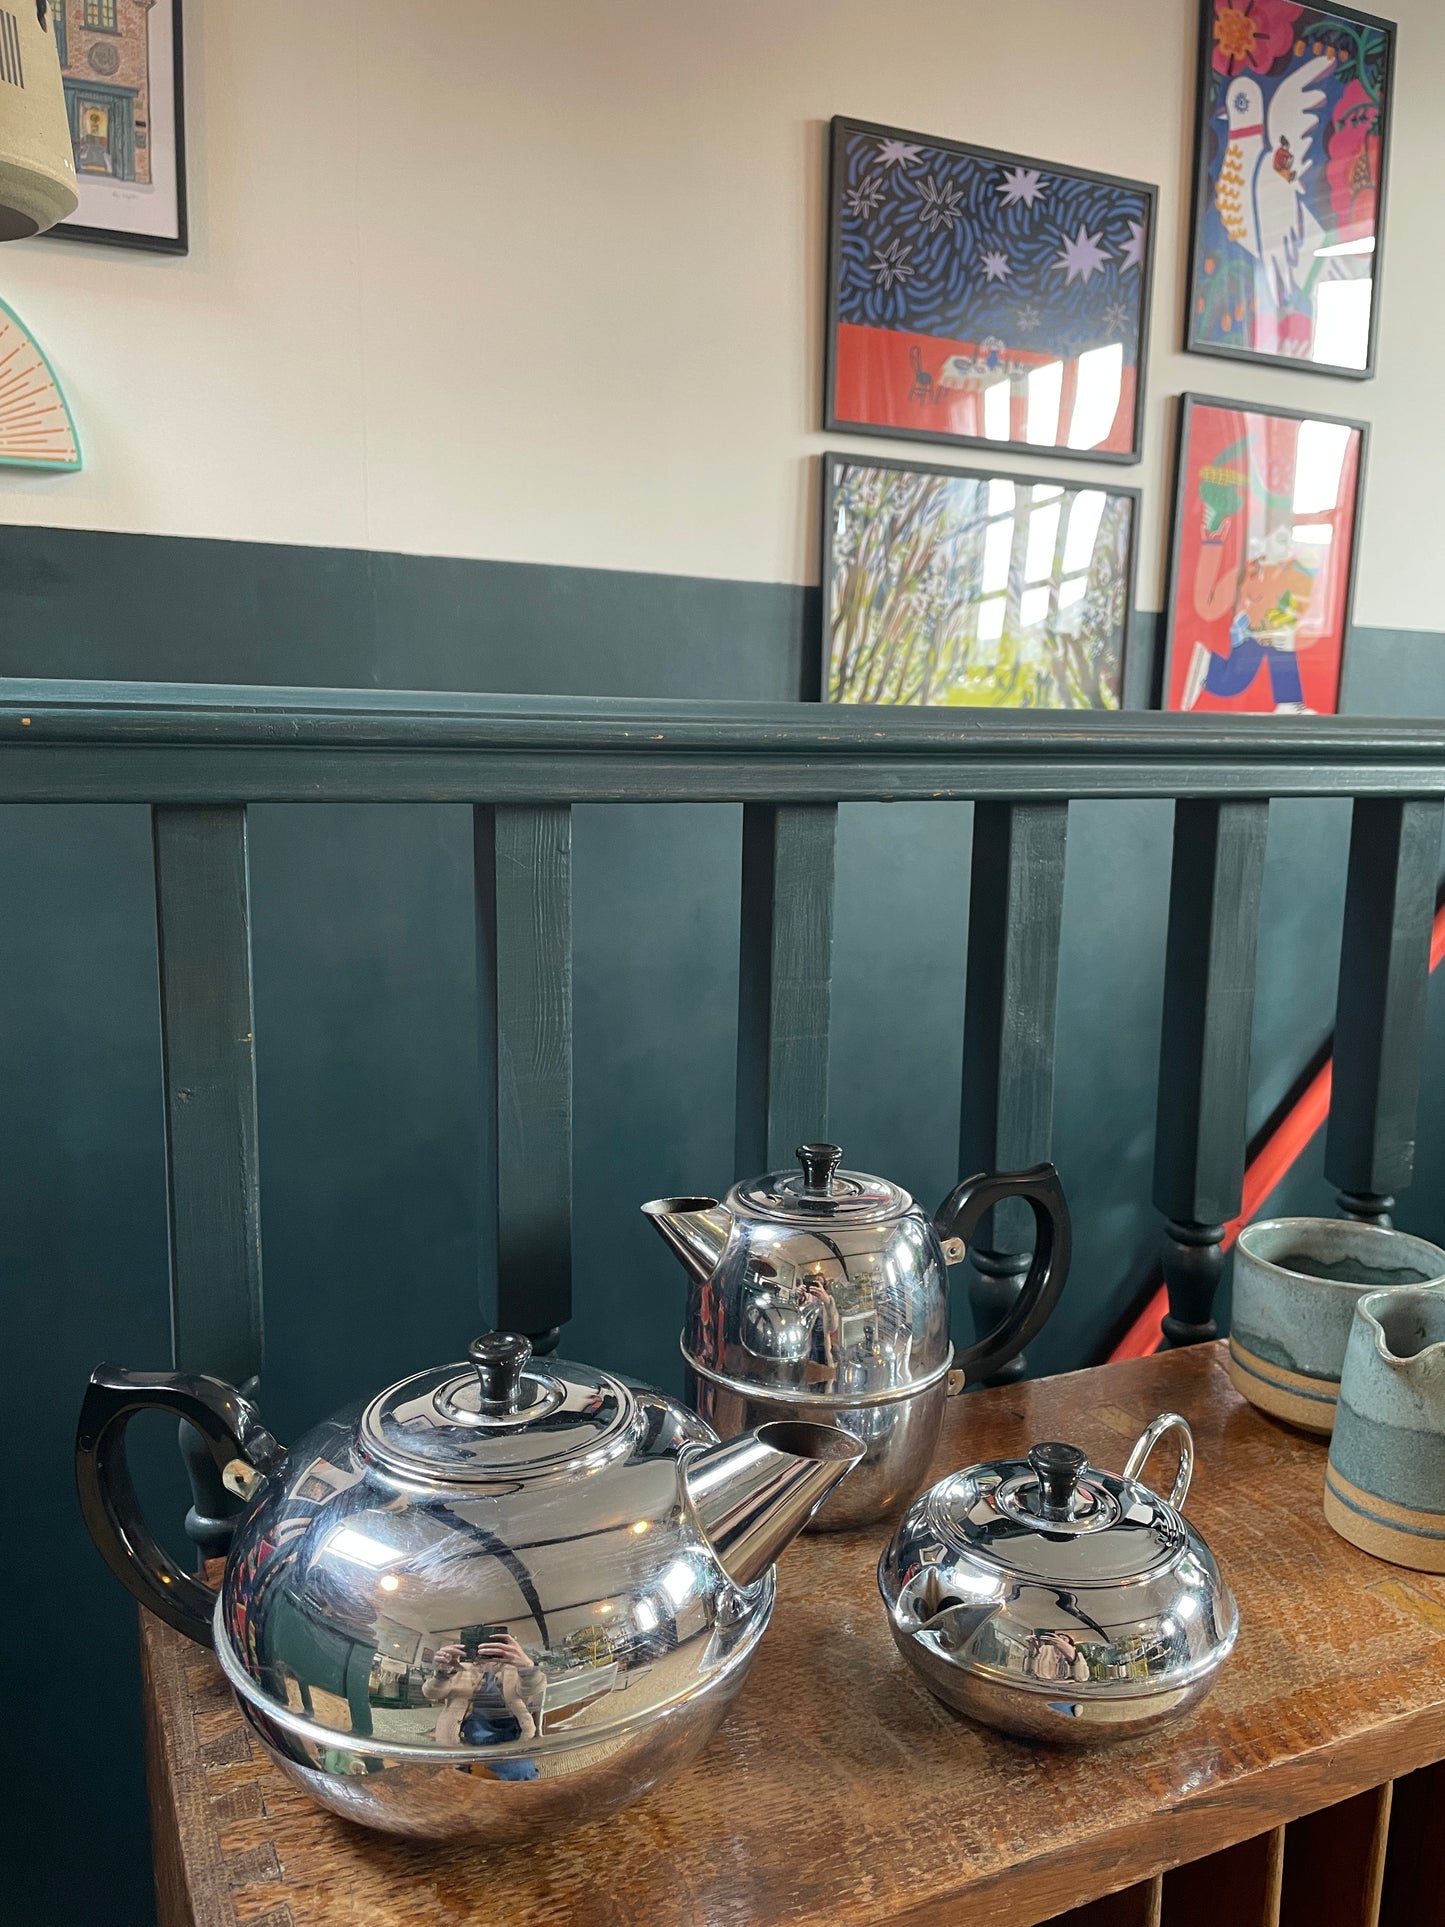 Britdis Tea Pot 4 cup - Made in NZ